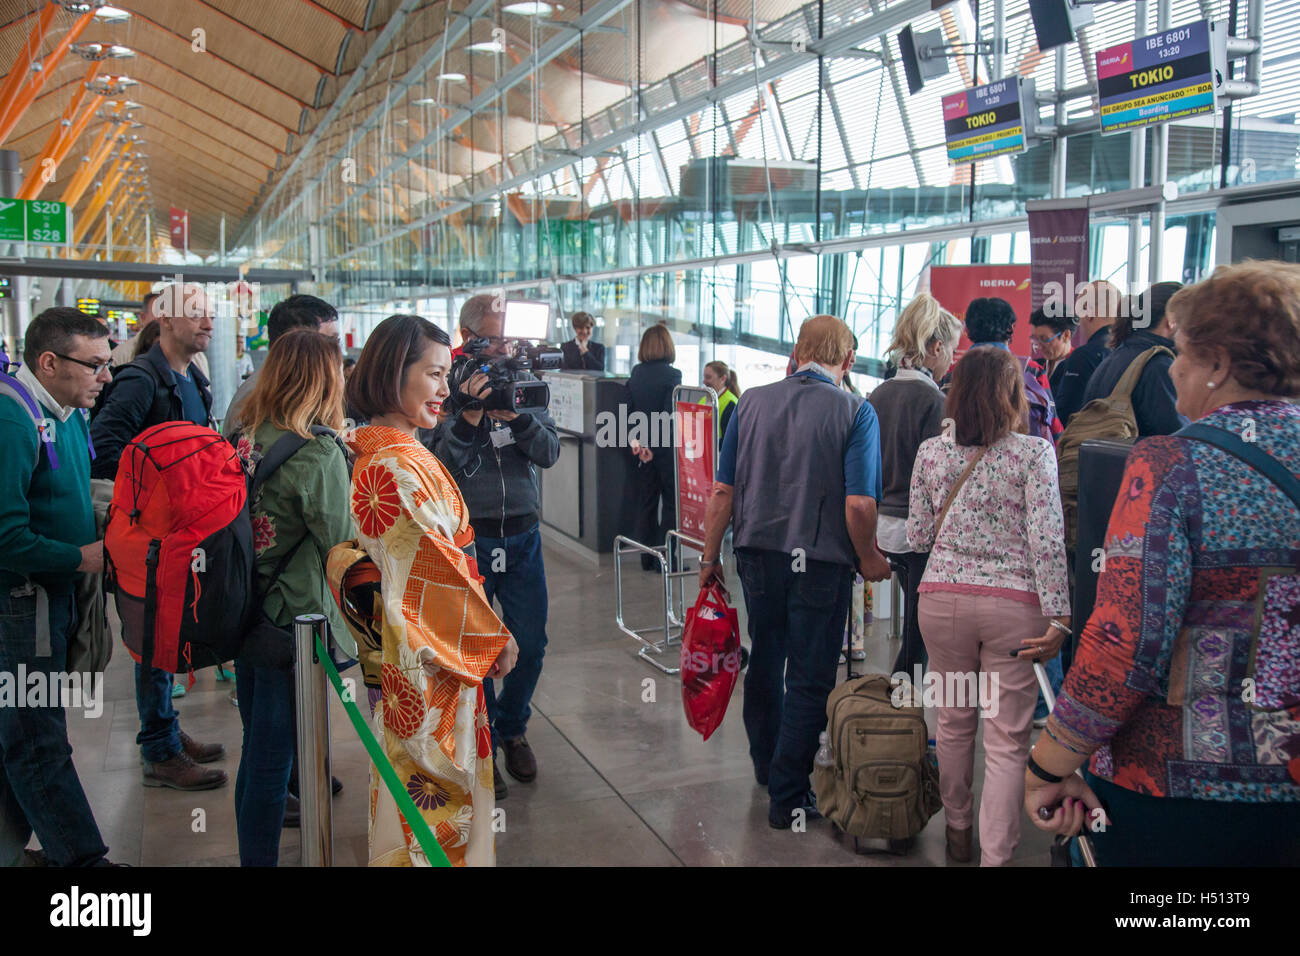 Passeggeri e media di salire a bordo del primo diretta inaugurale Iberia volo fra Spagna e Giappone (IB6801 Madrid Barajas a Tokyo Narita il 18 ottobre 2016) mentre viene accolto da ragazza giapponese vestita in tradizionali abiti kimono Foto Stock